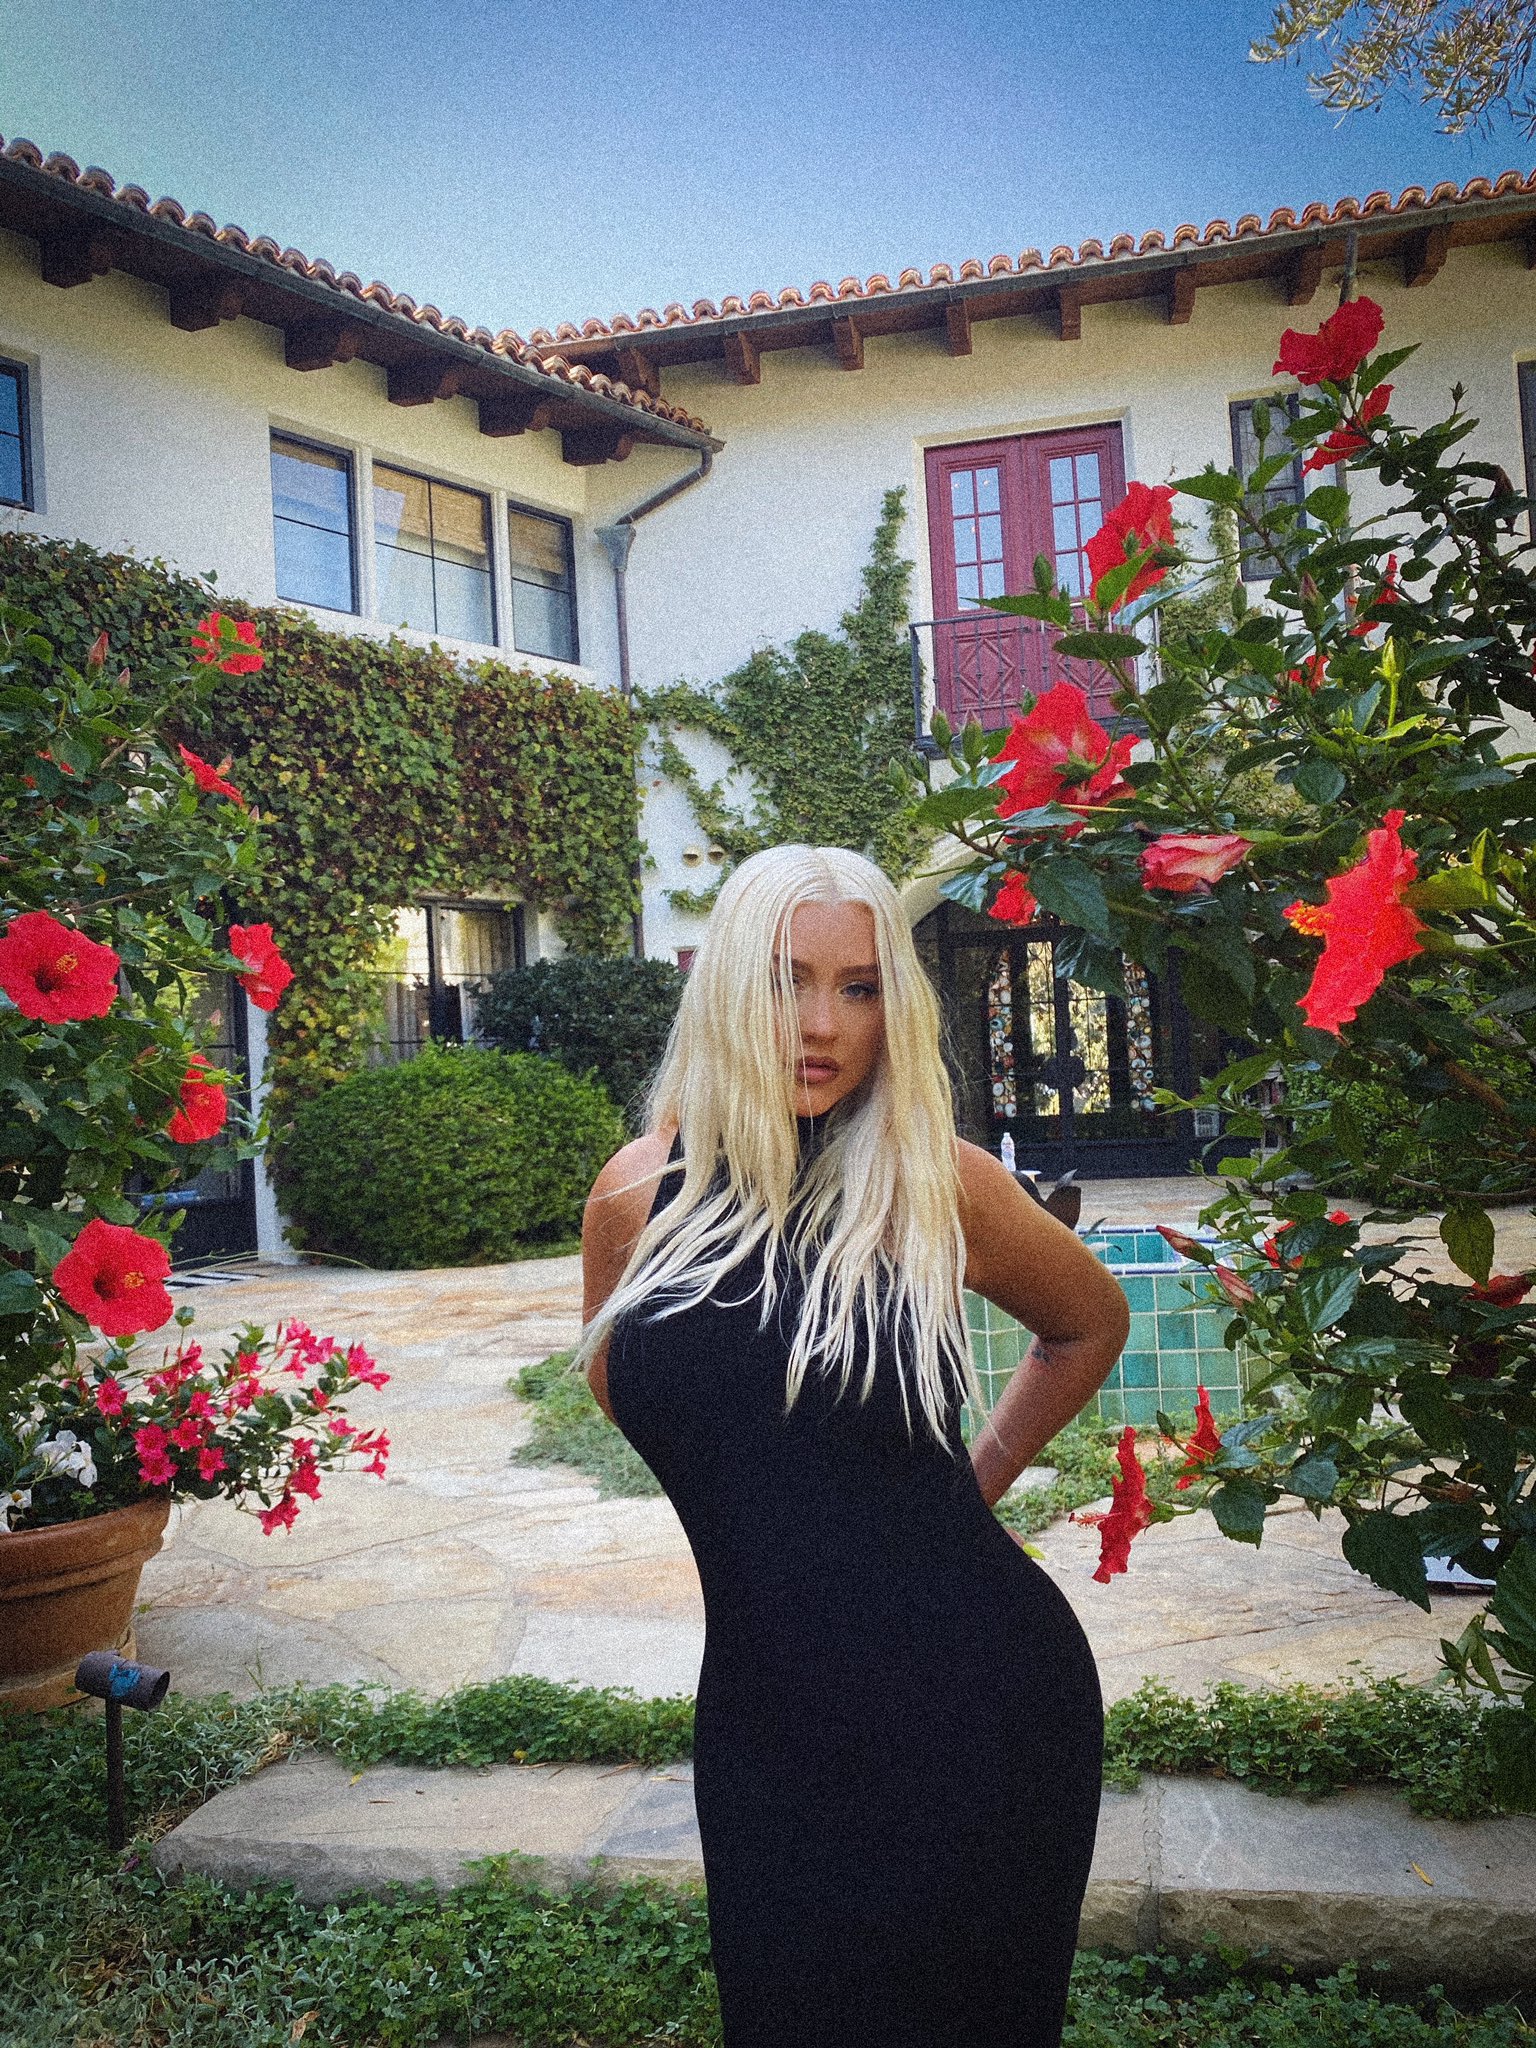 FOTOS Christina Aguilera cumple 40 aos de estilo! - Photo 4